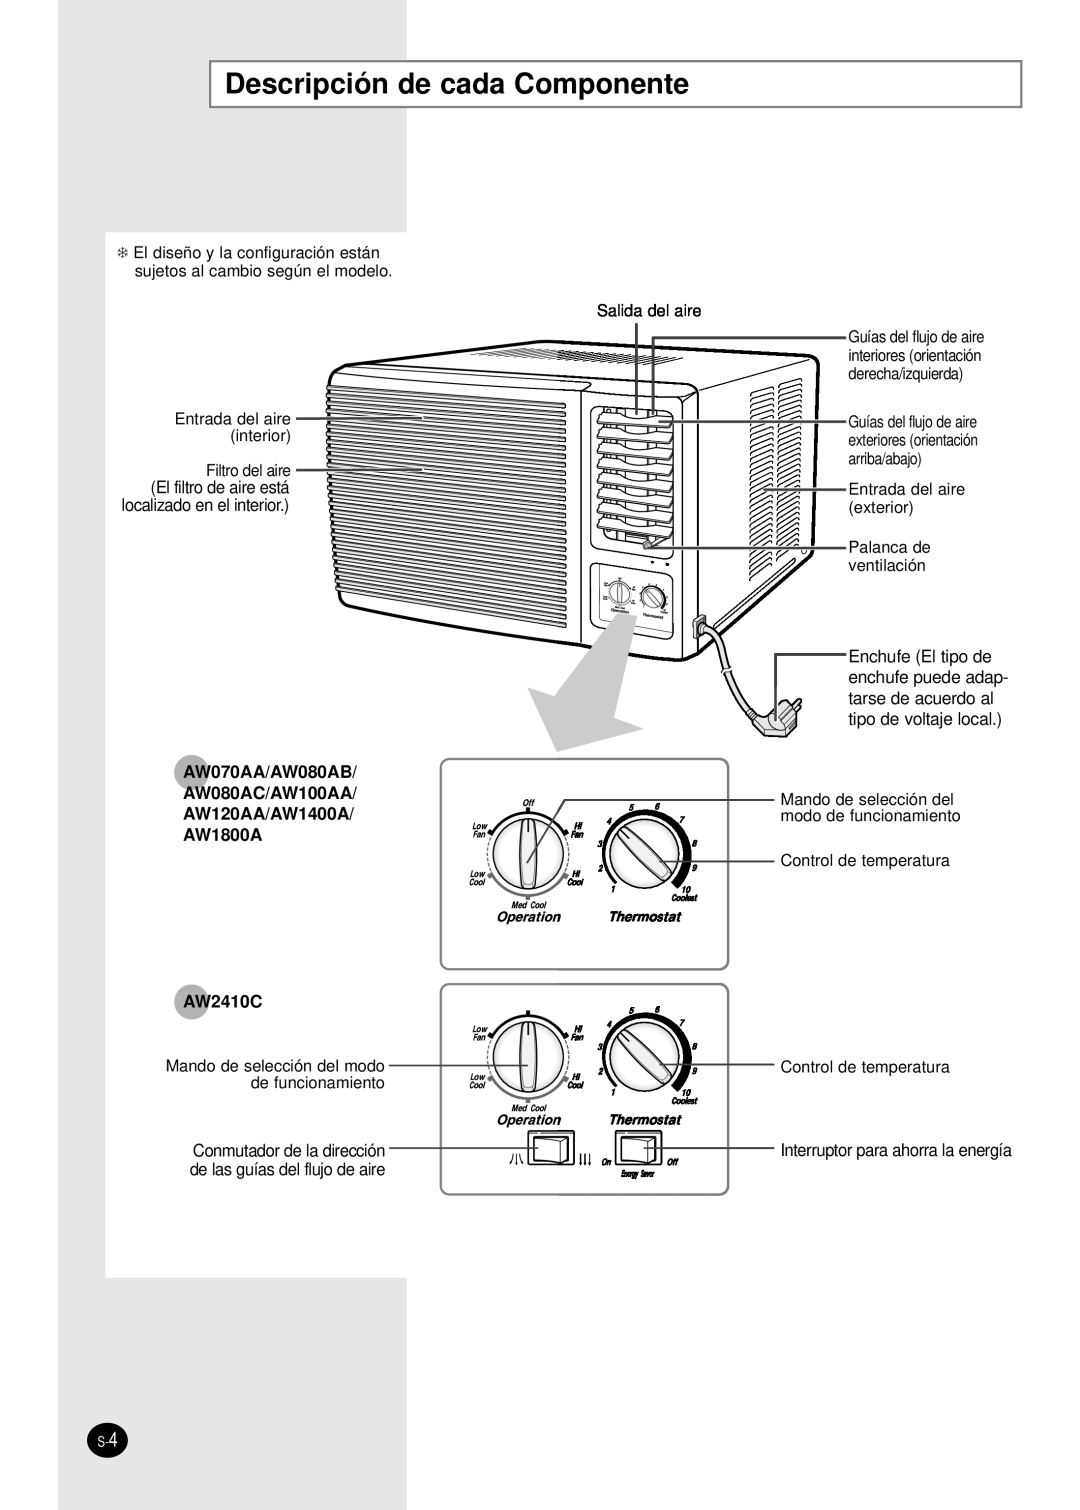 Samsung manual Descripción de cada Componente, AW070AA/AW080AB AW080AC/AW100AA AW120AA/AW1400A, AW1800A AW2410C 